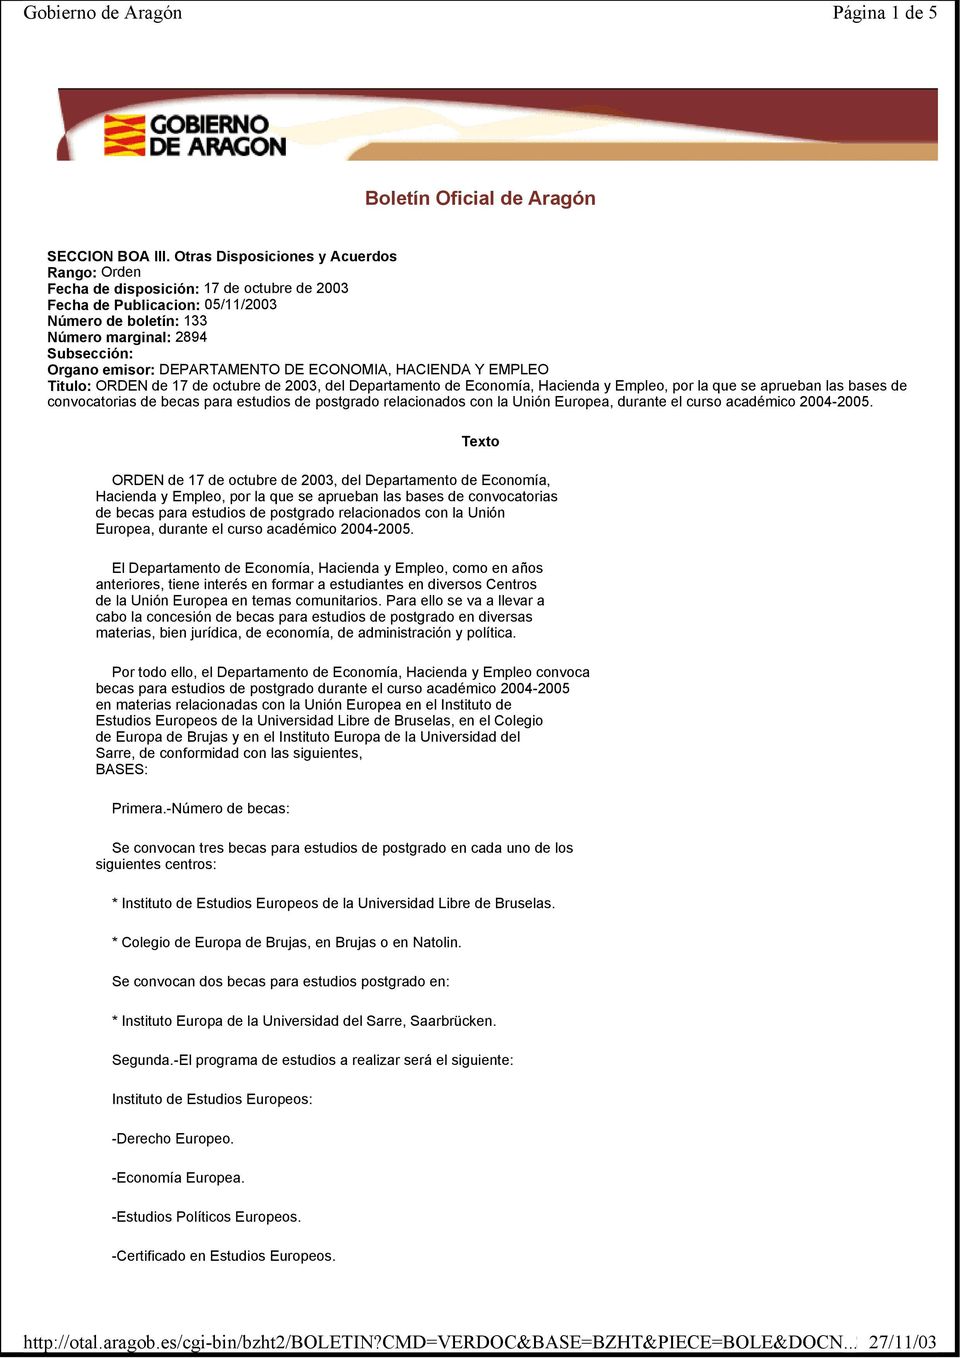 DEPARTAMENTO DE ECONOMIA, HACIENDA Y EMPLEO Titulo: ORDEN de 17 de octubre de 2003, del Departamento de Economía, Hacienda y Empleo, por la que se aprueban las bases de convocatorias de becas para